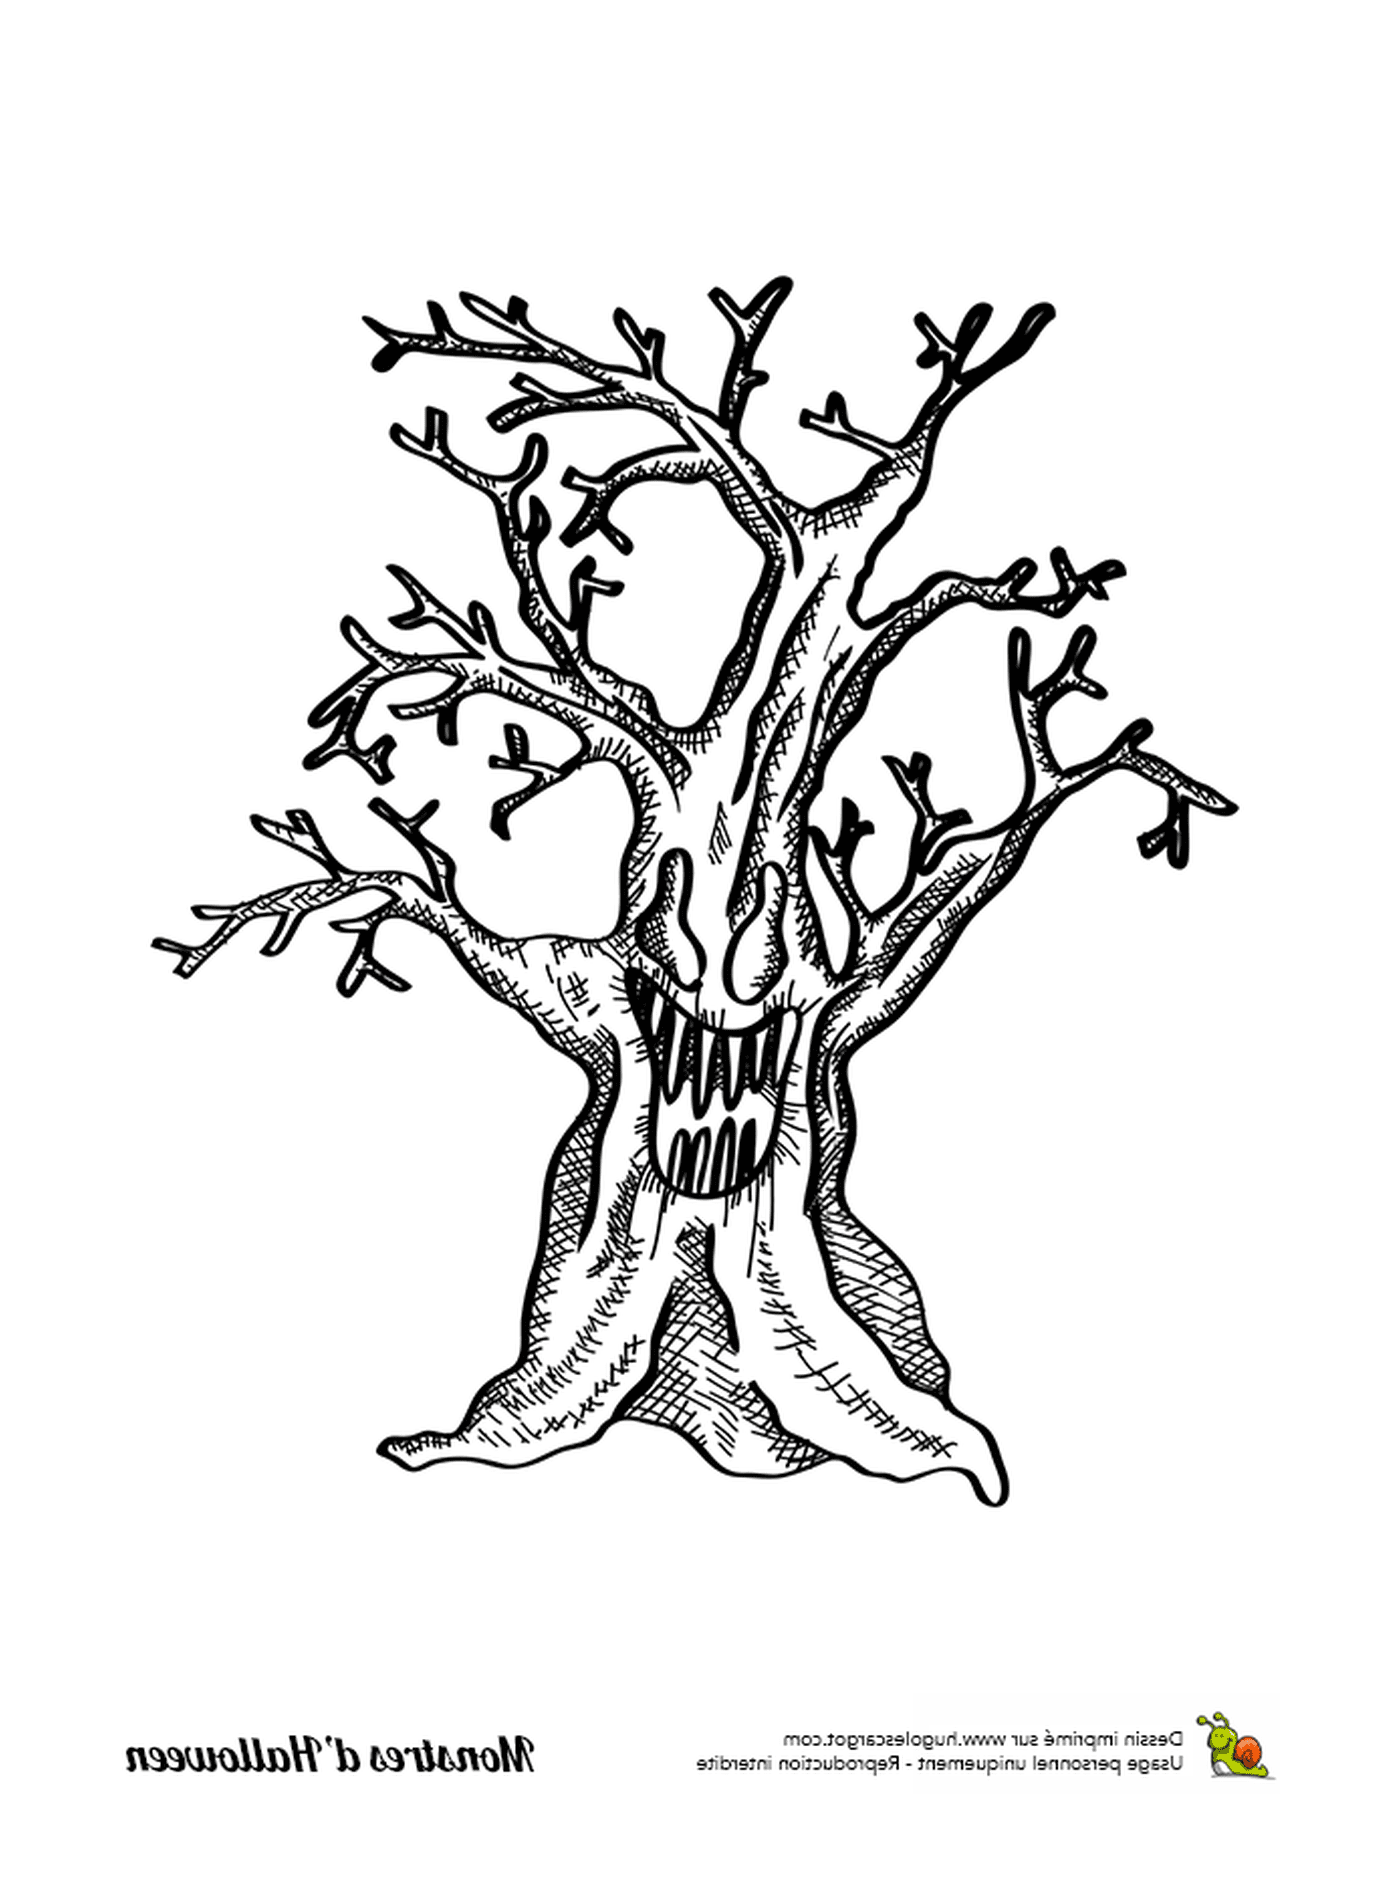  Uma tinta, uma árvore velha sem folhas 